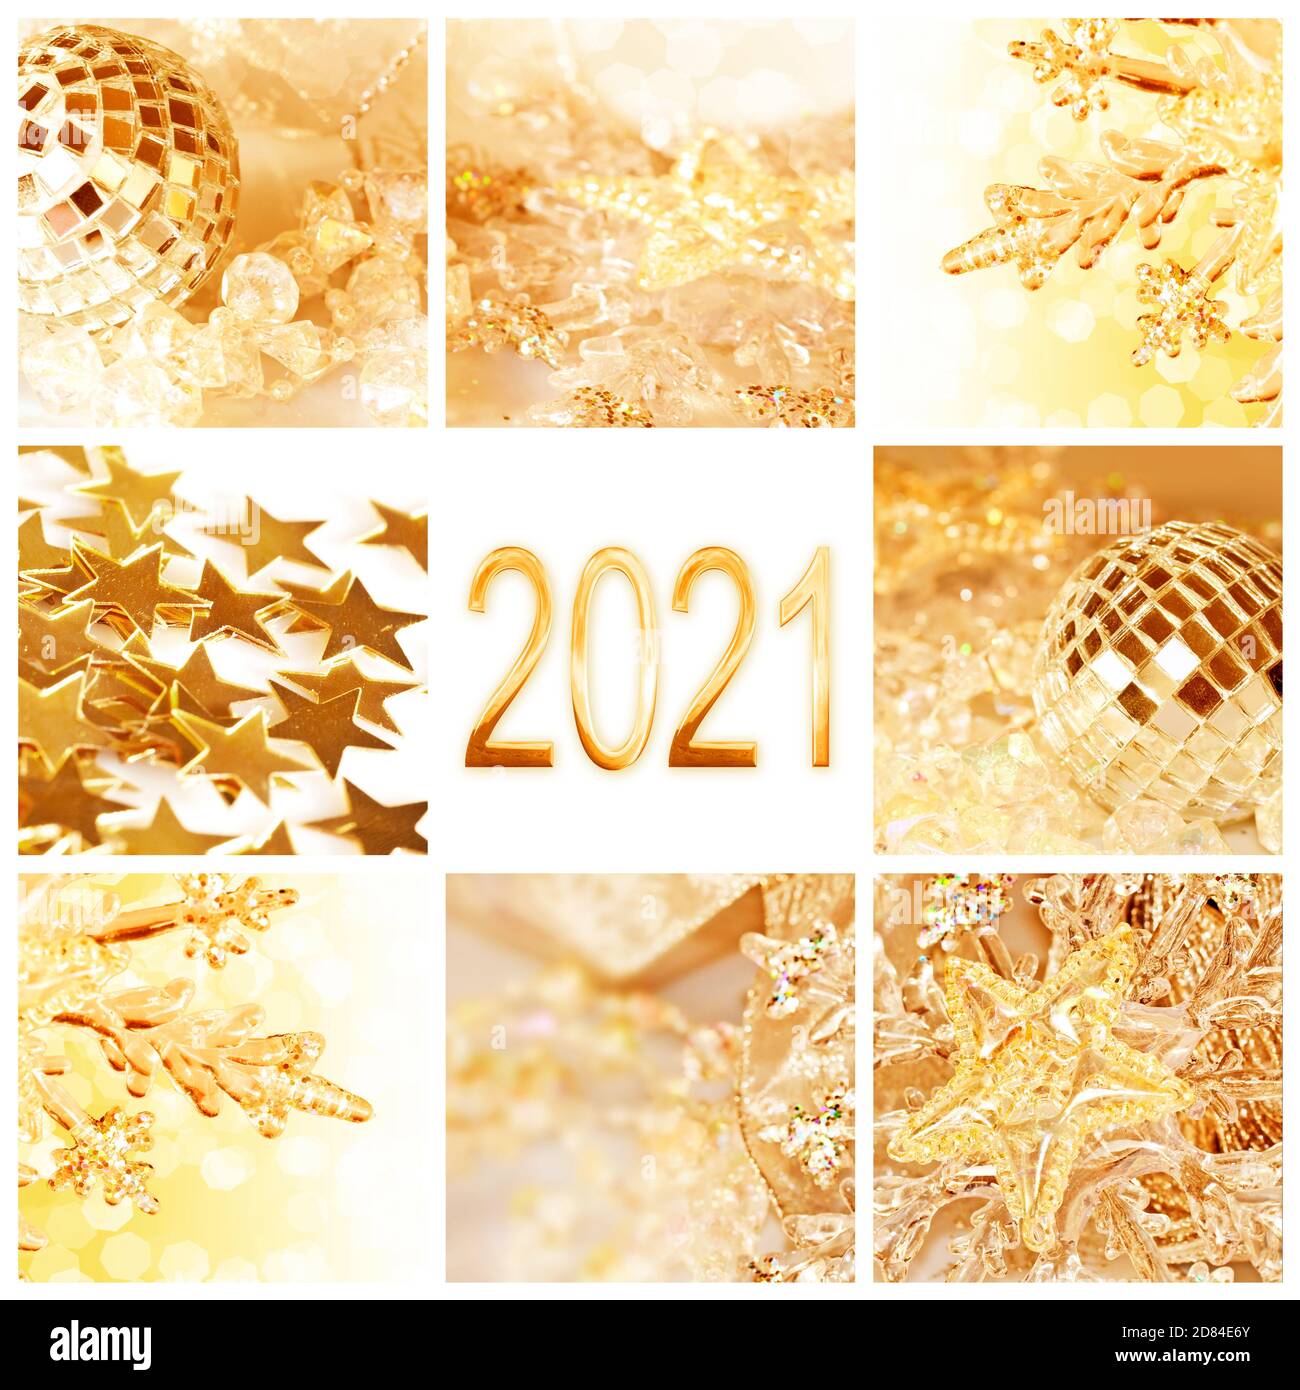 2021, goldene weihnachtsschmuck Collage Quadrat Neujahr und Urlaub Grußkarte Stockfoto